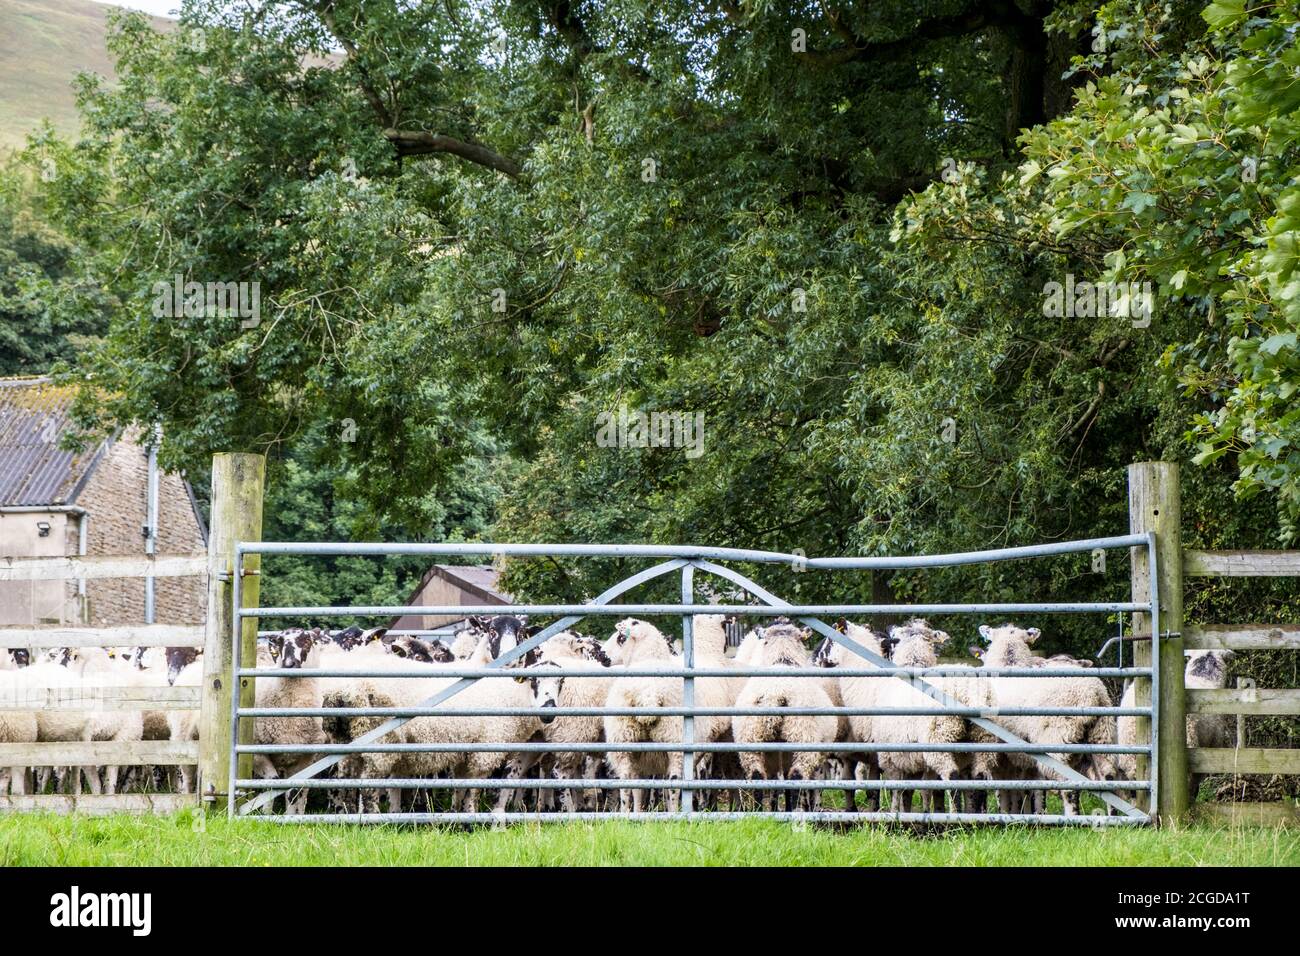 Moutons dans une ferme de la vallée d'Edale, Derbyshire, Angleterre, Royaume-Uni Banque D'Images